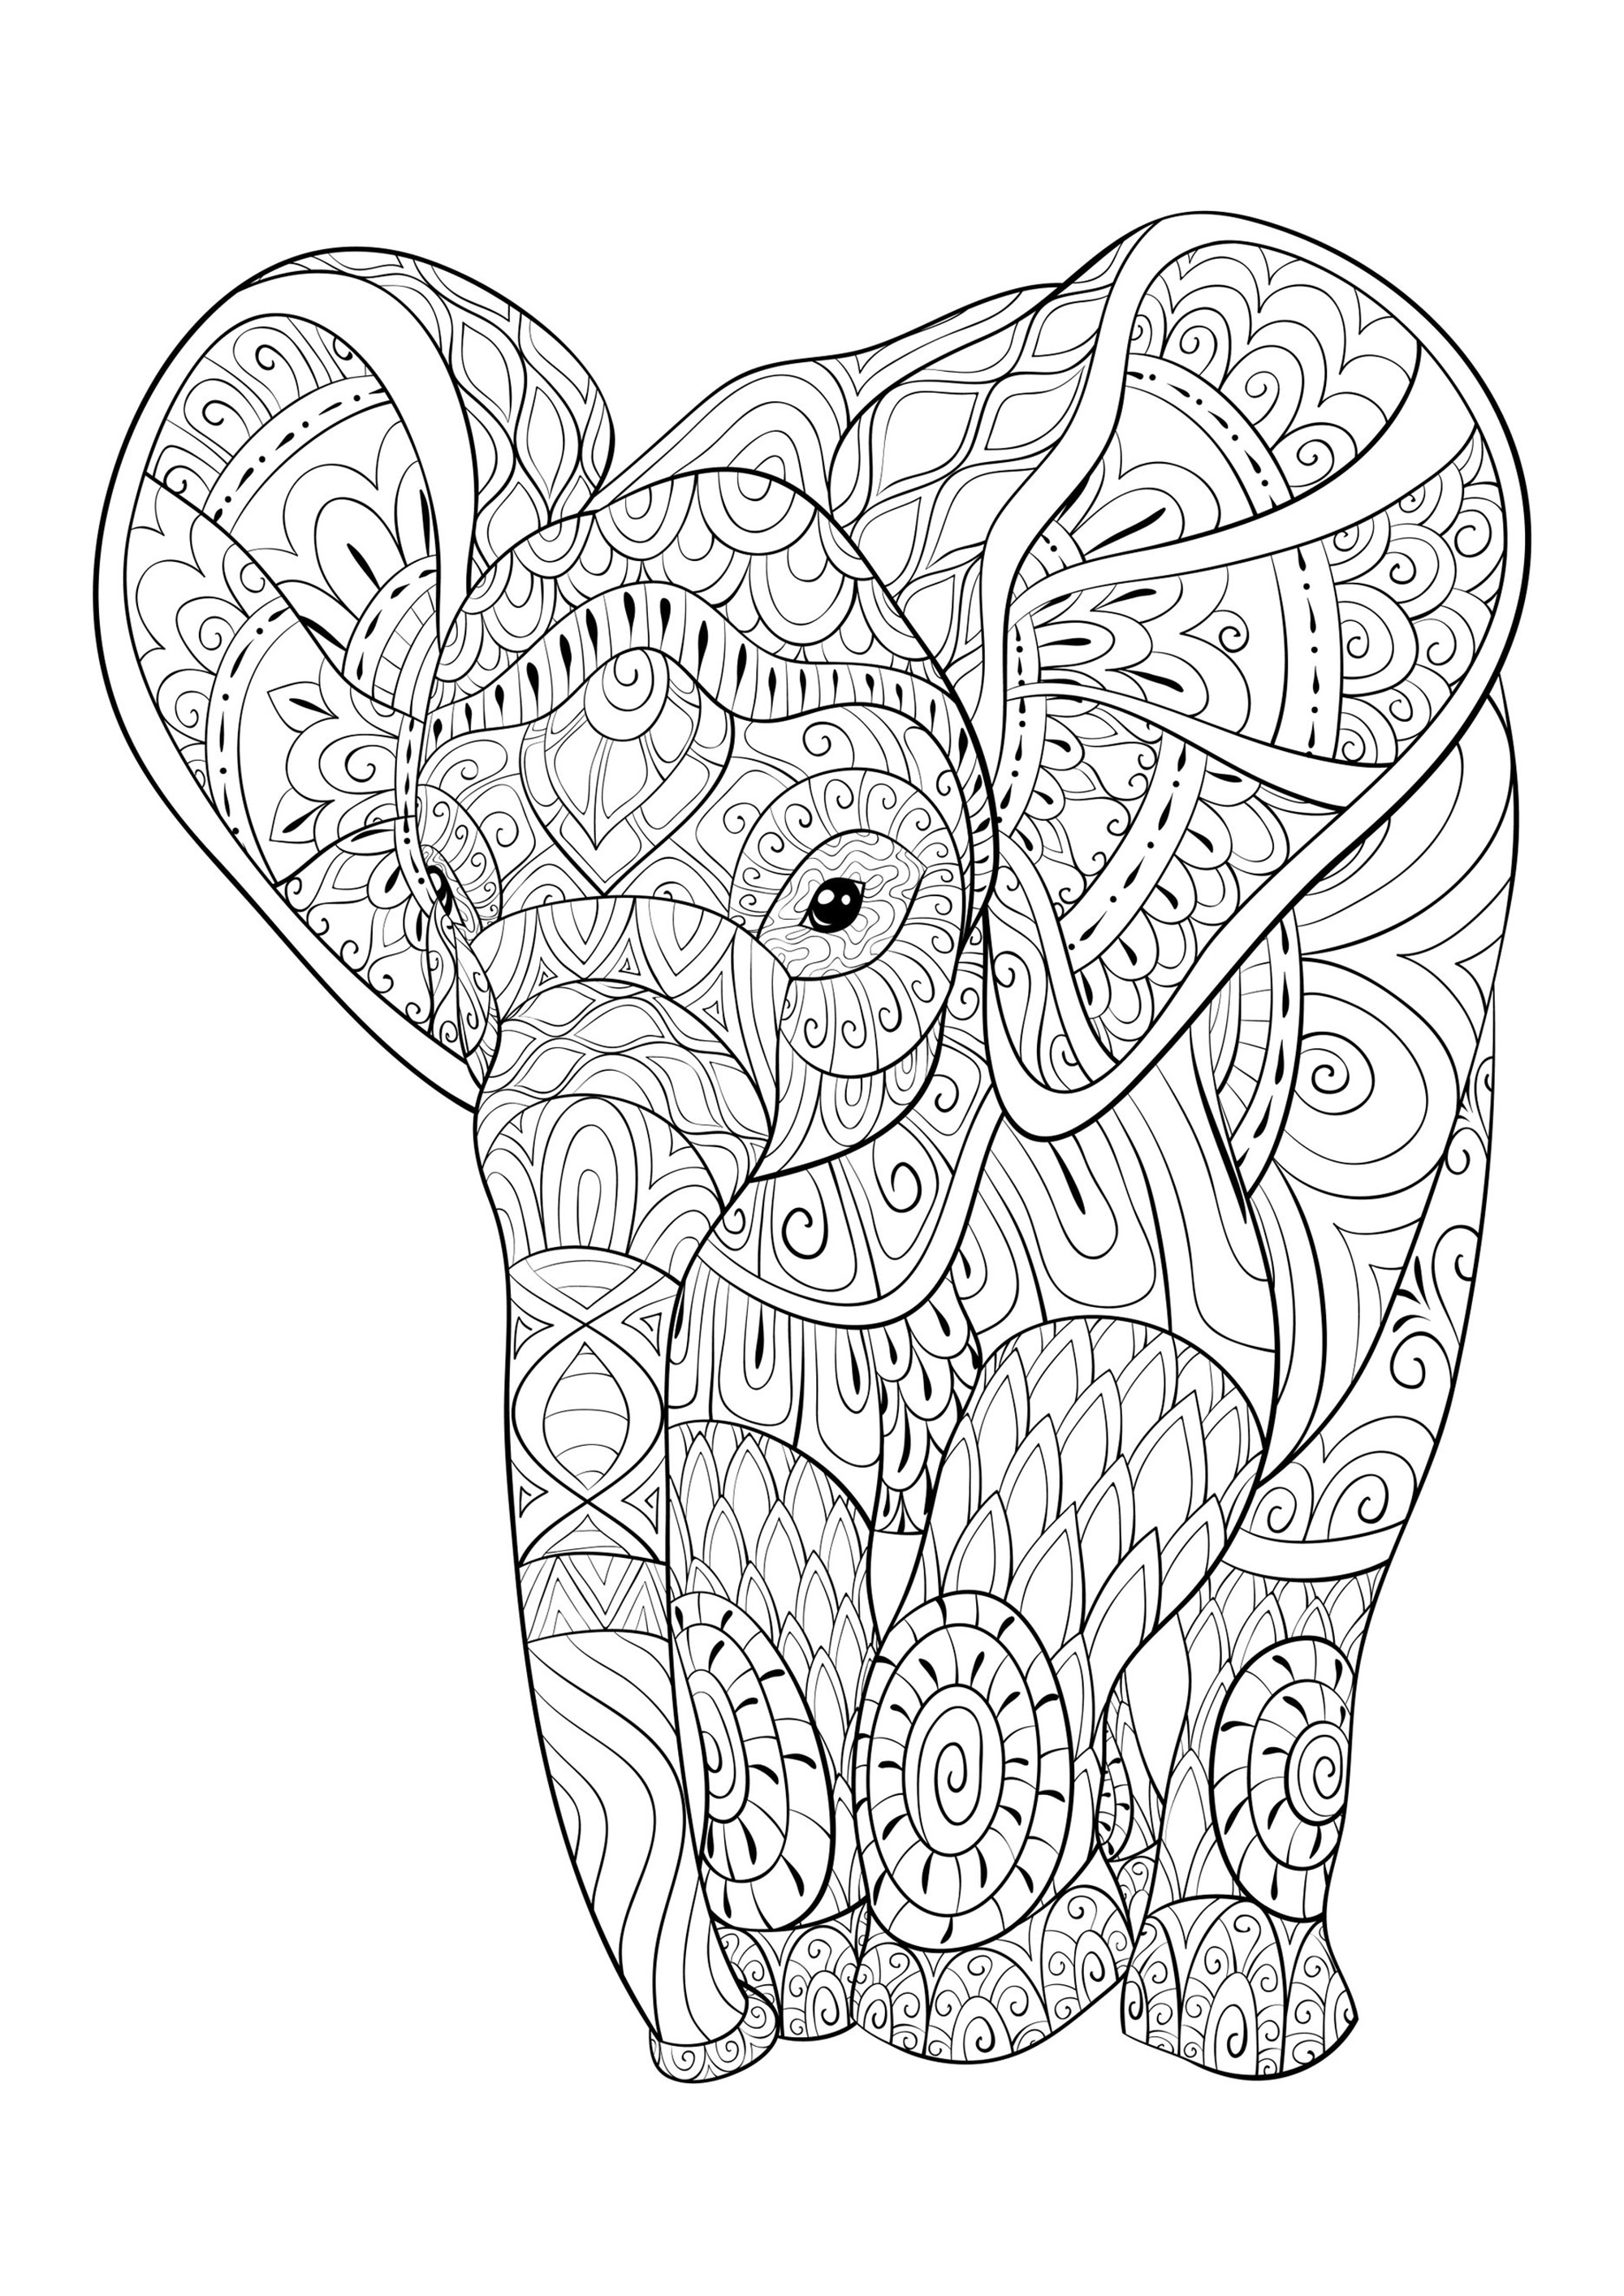 Junger Elefant voller schöner Muster zum Ausmalen, Künstler : Nonuzza   Quelle : 123rf